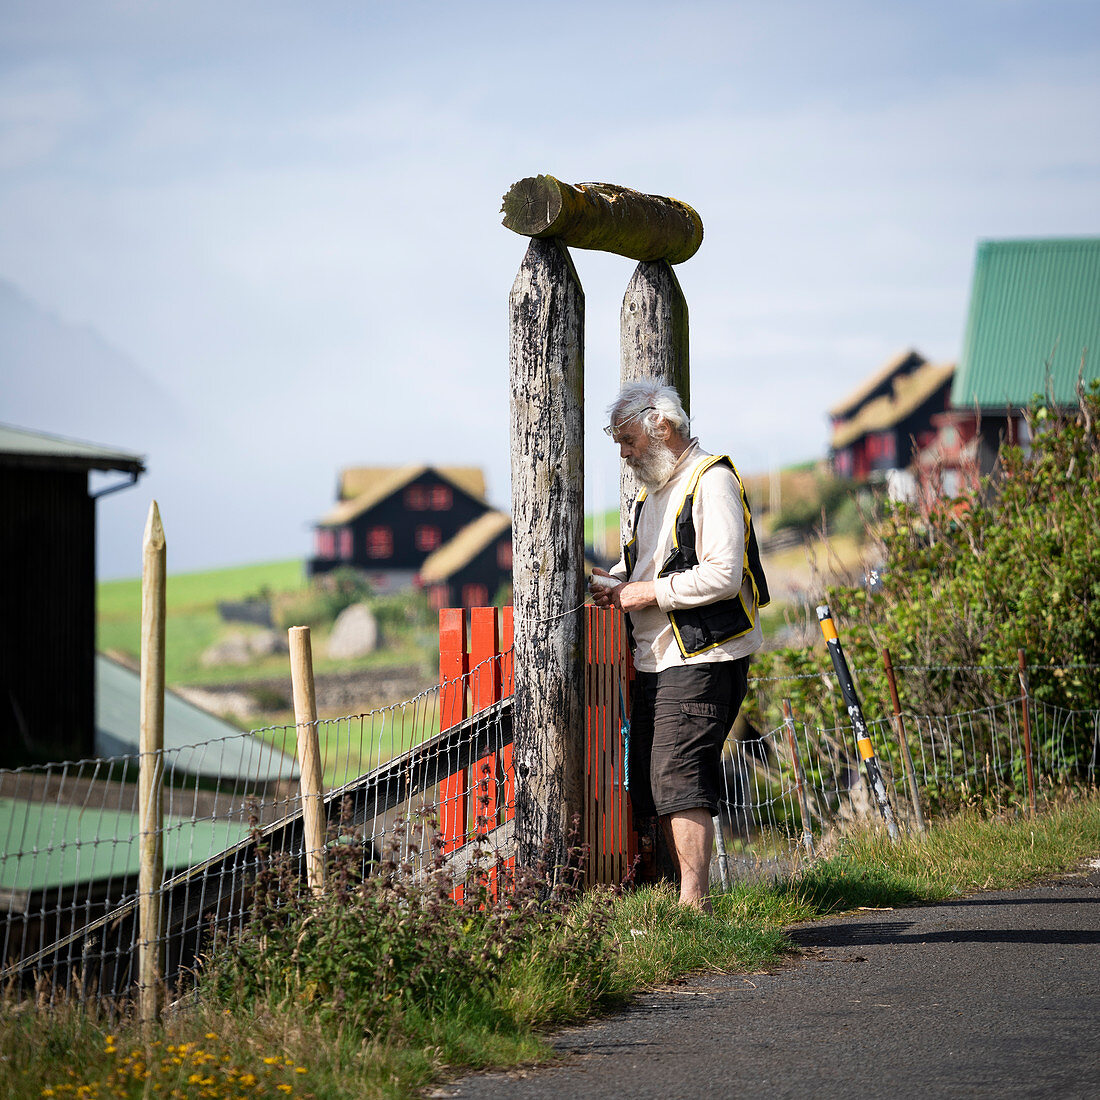 Residents of the village of Kirkjubøur on Streymoy, Faroe Islands